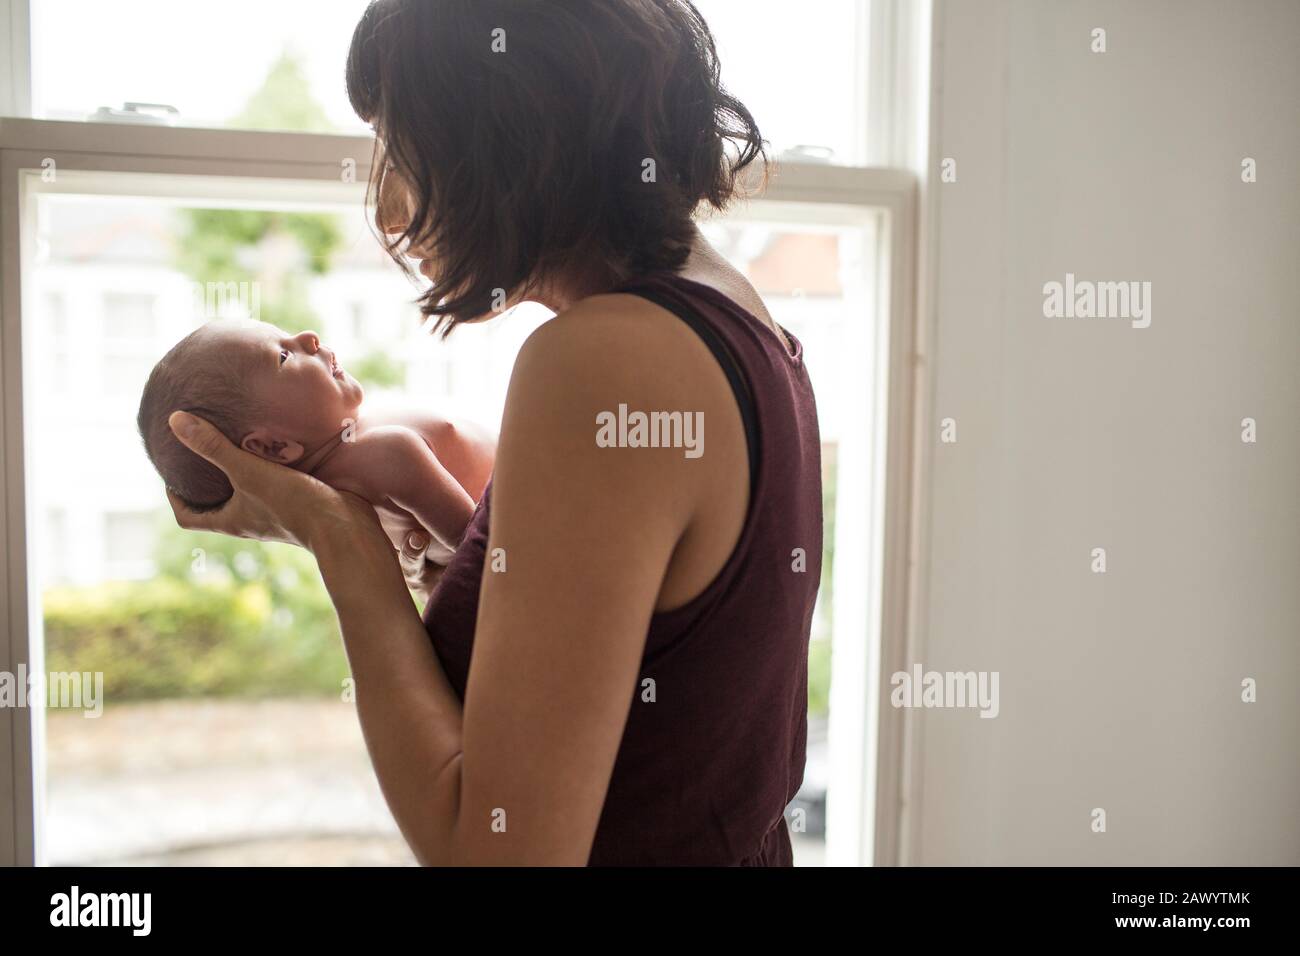 La mère berce son nouveau-né à la fenêtre Banque D'Images